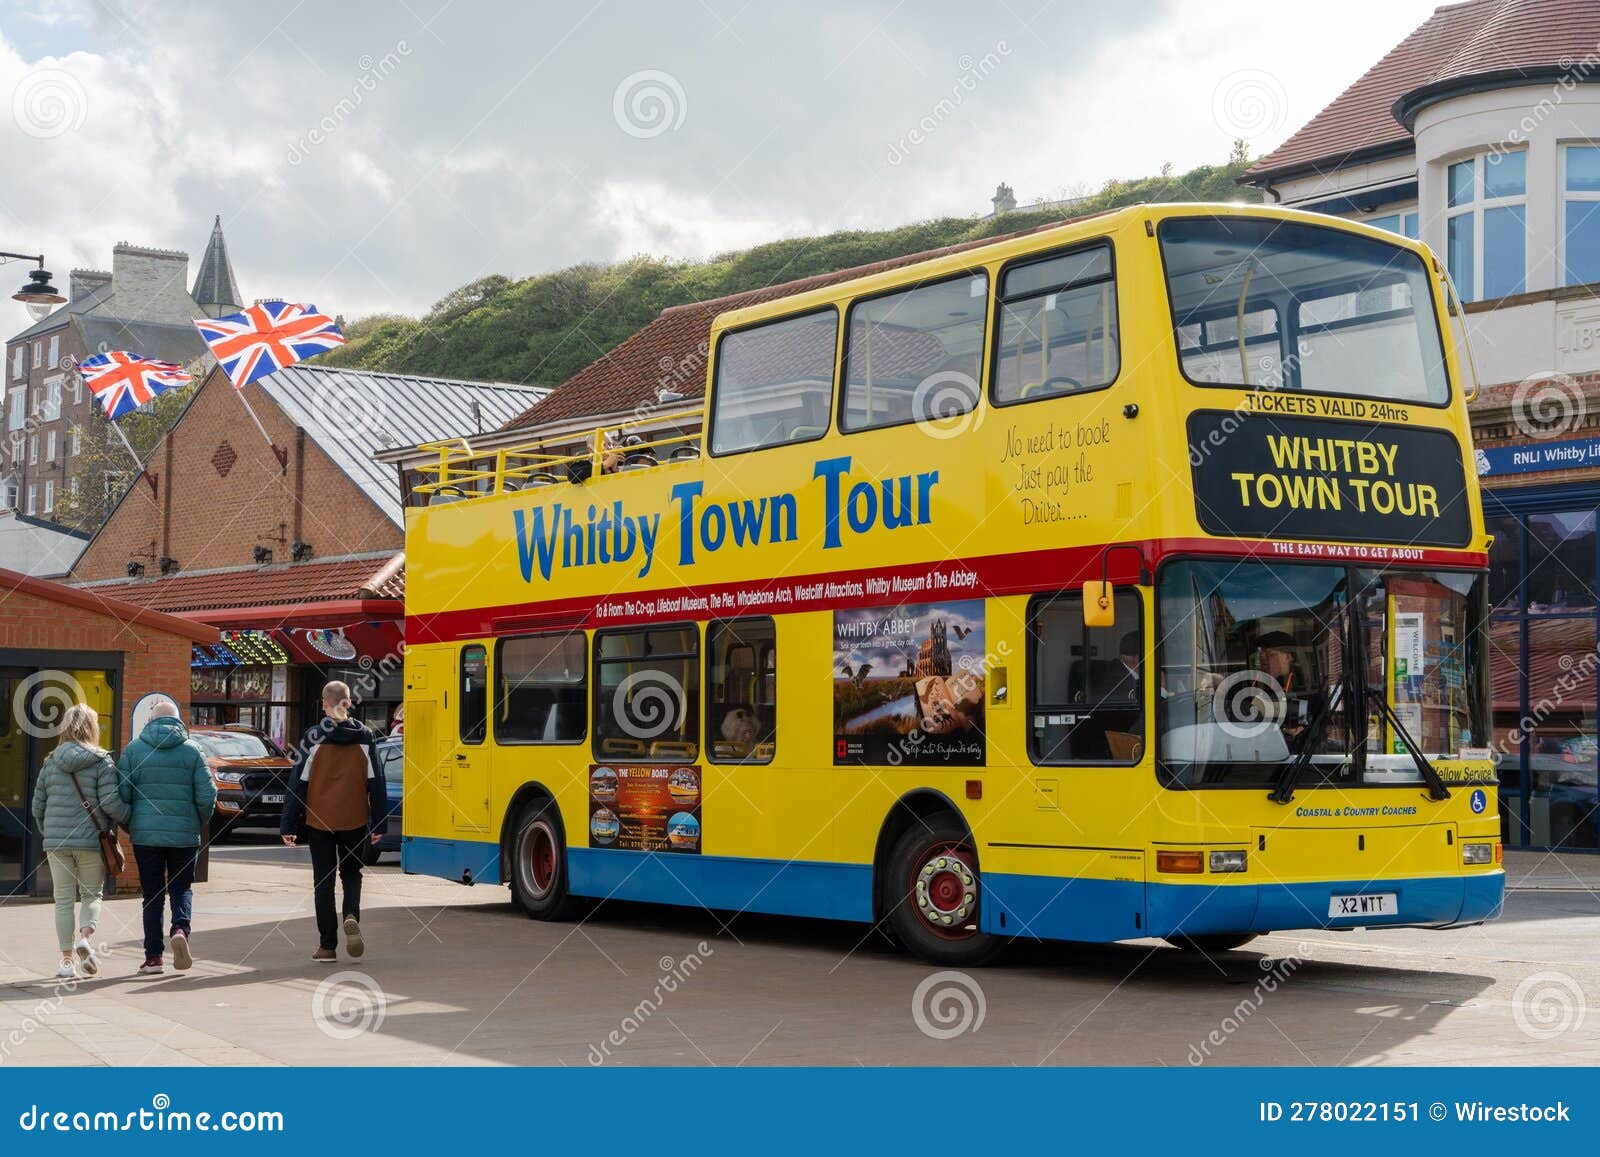 yellow bus tour whitby